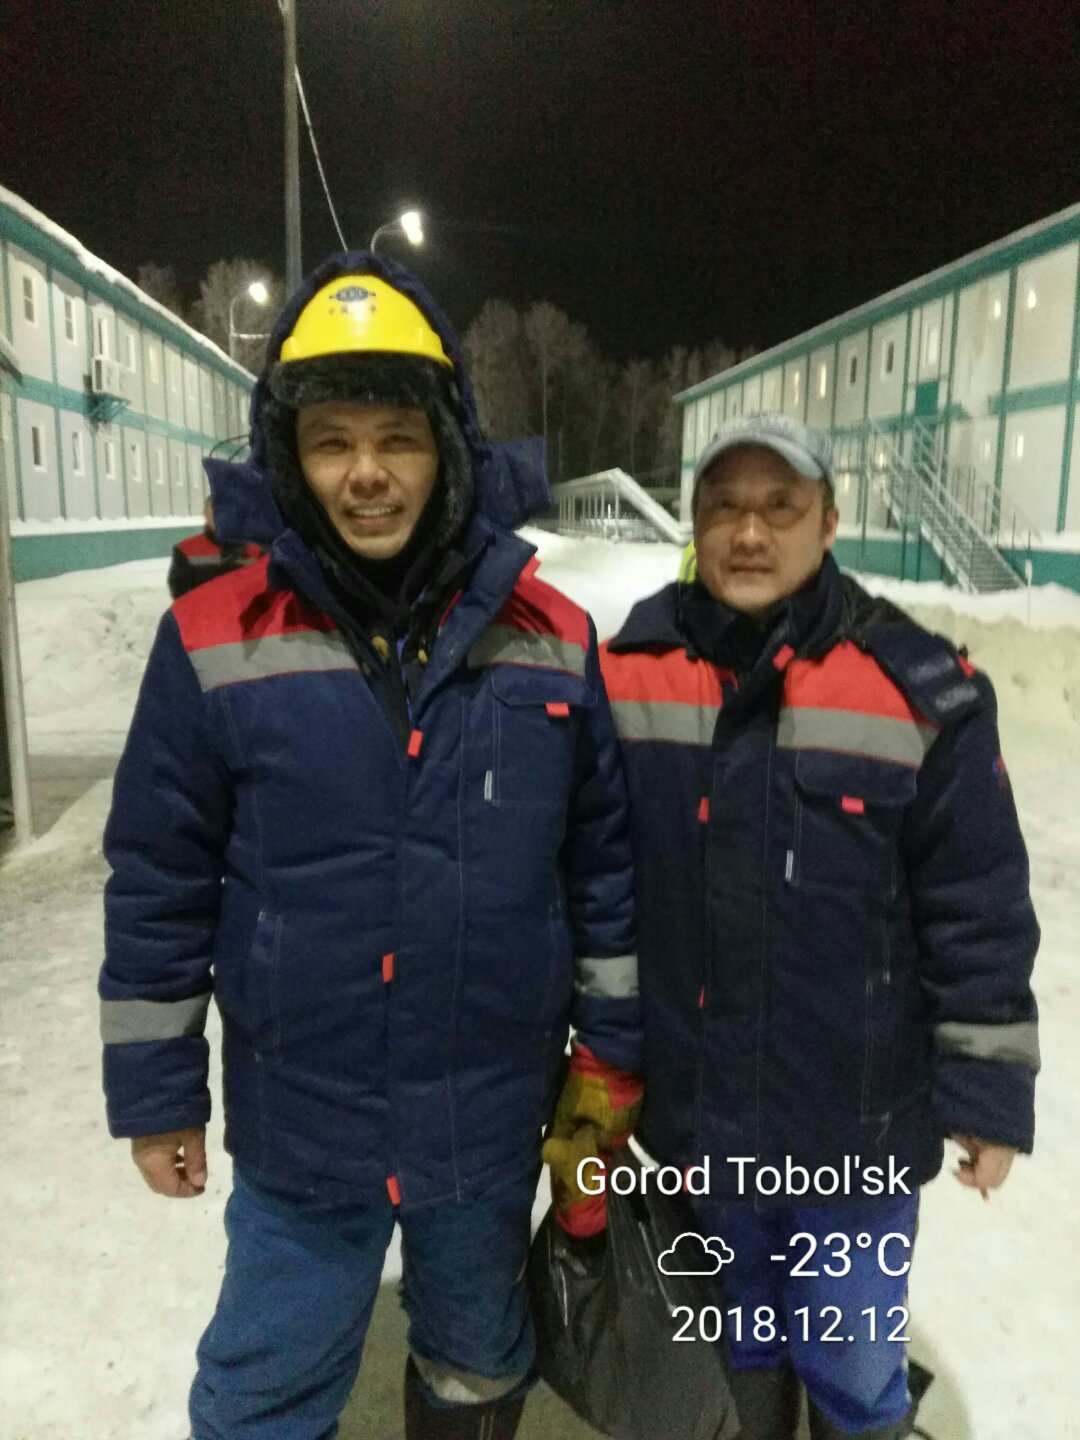 去年在托博尔斯克快回国时，和乌兹别克斯坦工友候加因提前道别，合影留念。 候加因和我一样都是退伍军人，